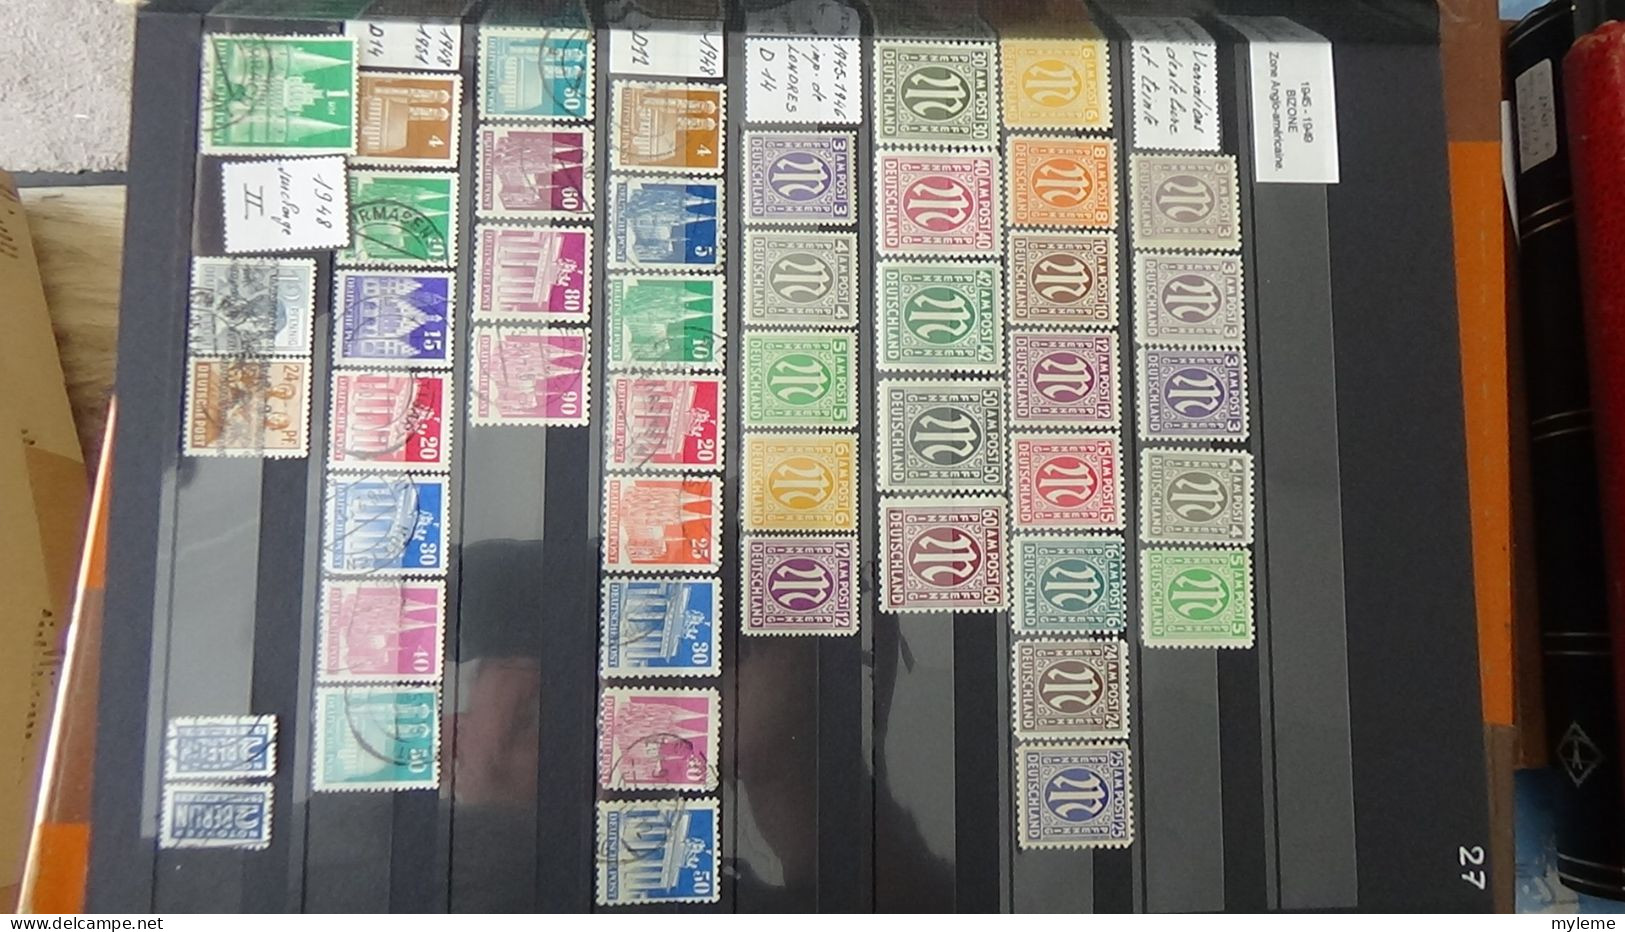 BF31 Ensemble de timbres de divers pays + Orphelin N° 152 ** (2 pites de rouille au dos)  Cote 550 euros